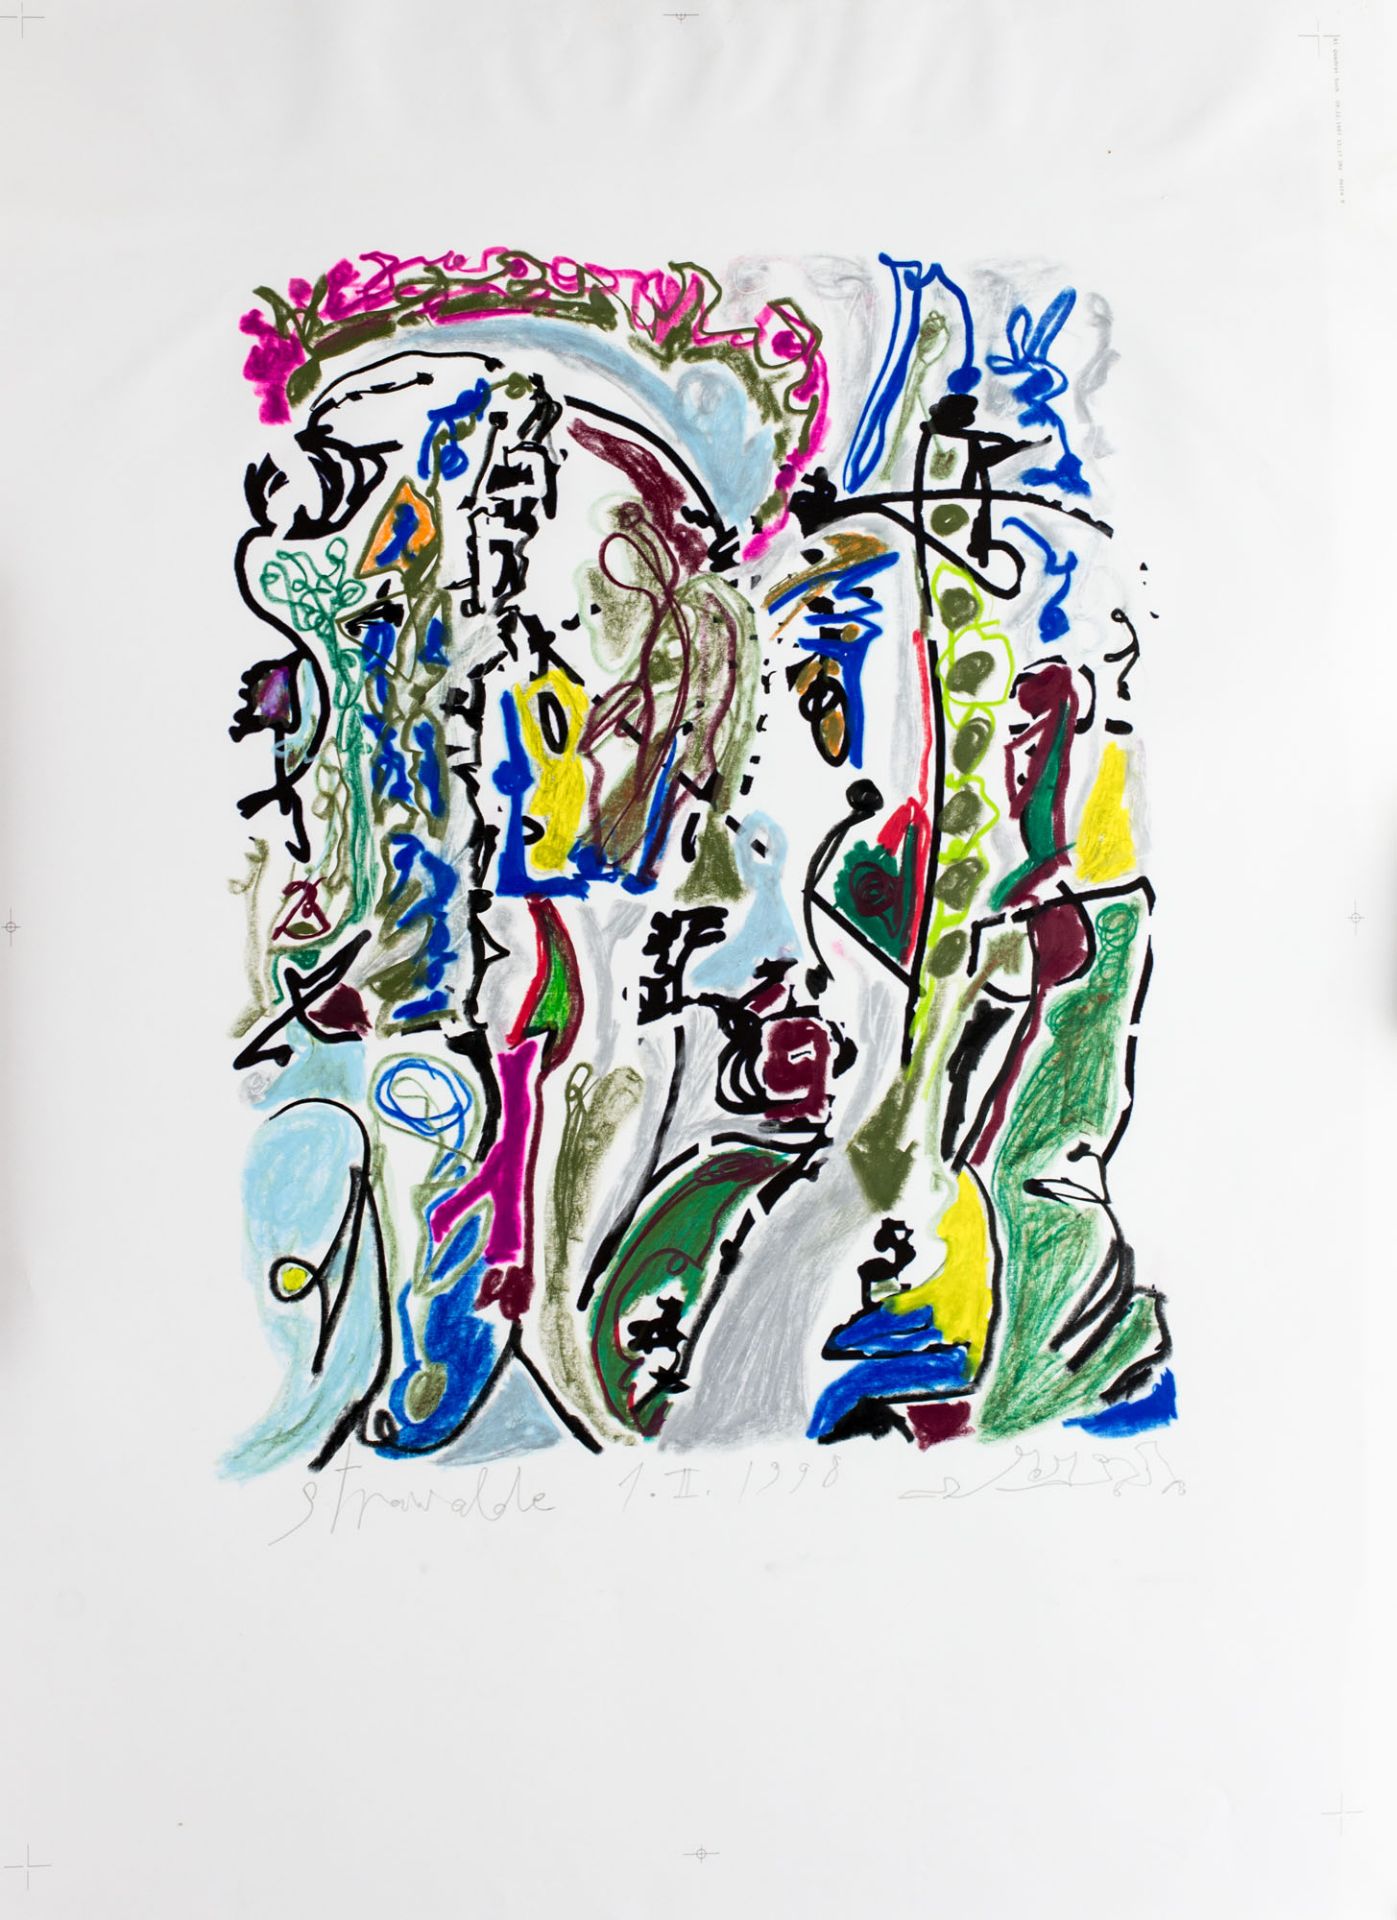 Strawalde (1931 Frankenberg) (F)o.T., 1998, Pastell und Ölkreide auf Offsetdruck, 90 cm x 86 cm